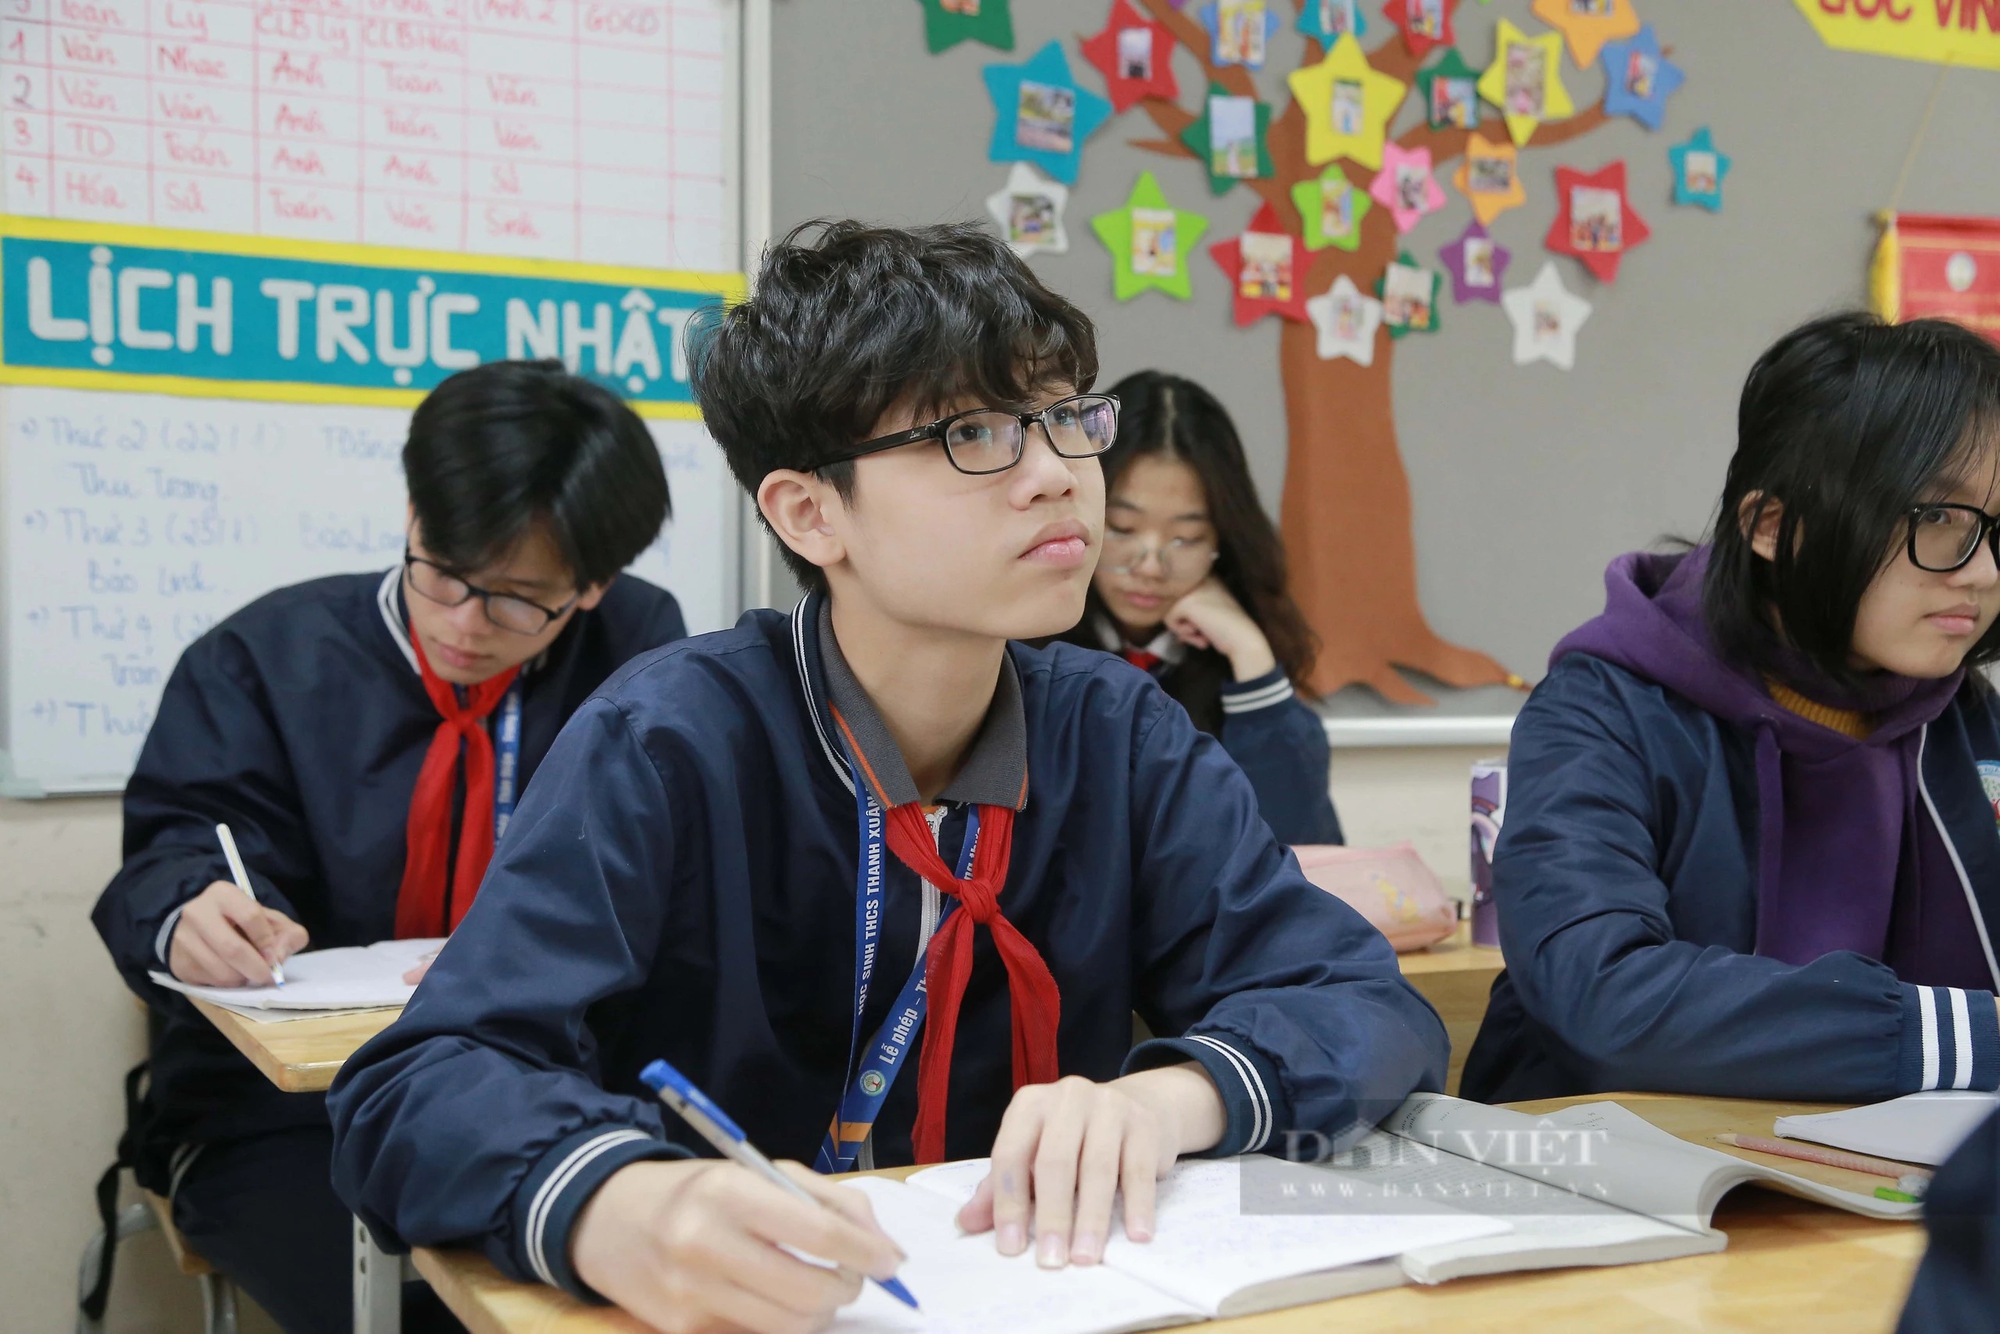 Ngày mai (15/2) học sinh Hà Nội đi học lại sau kỳ nghỉ Tết, đây là những điều cần lưu ý- Ảnh 2.